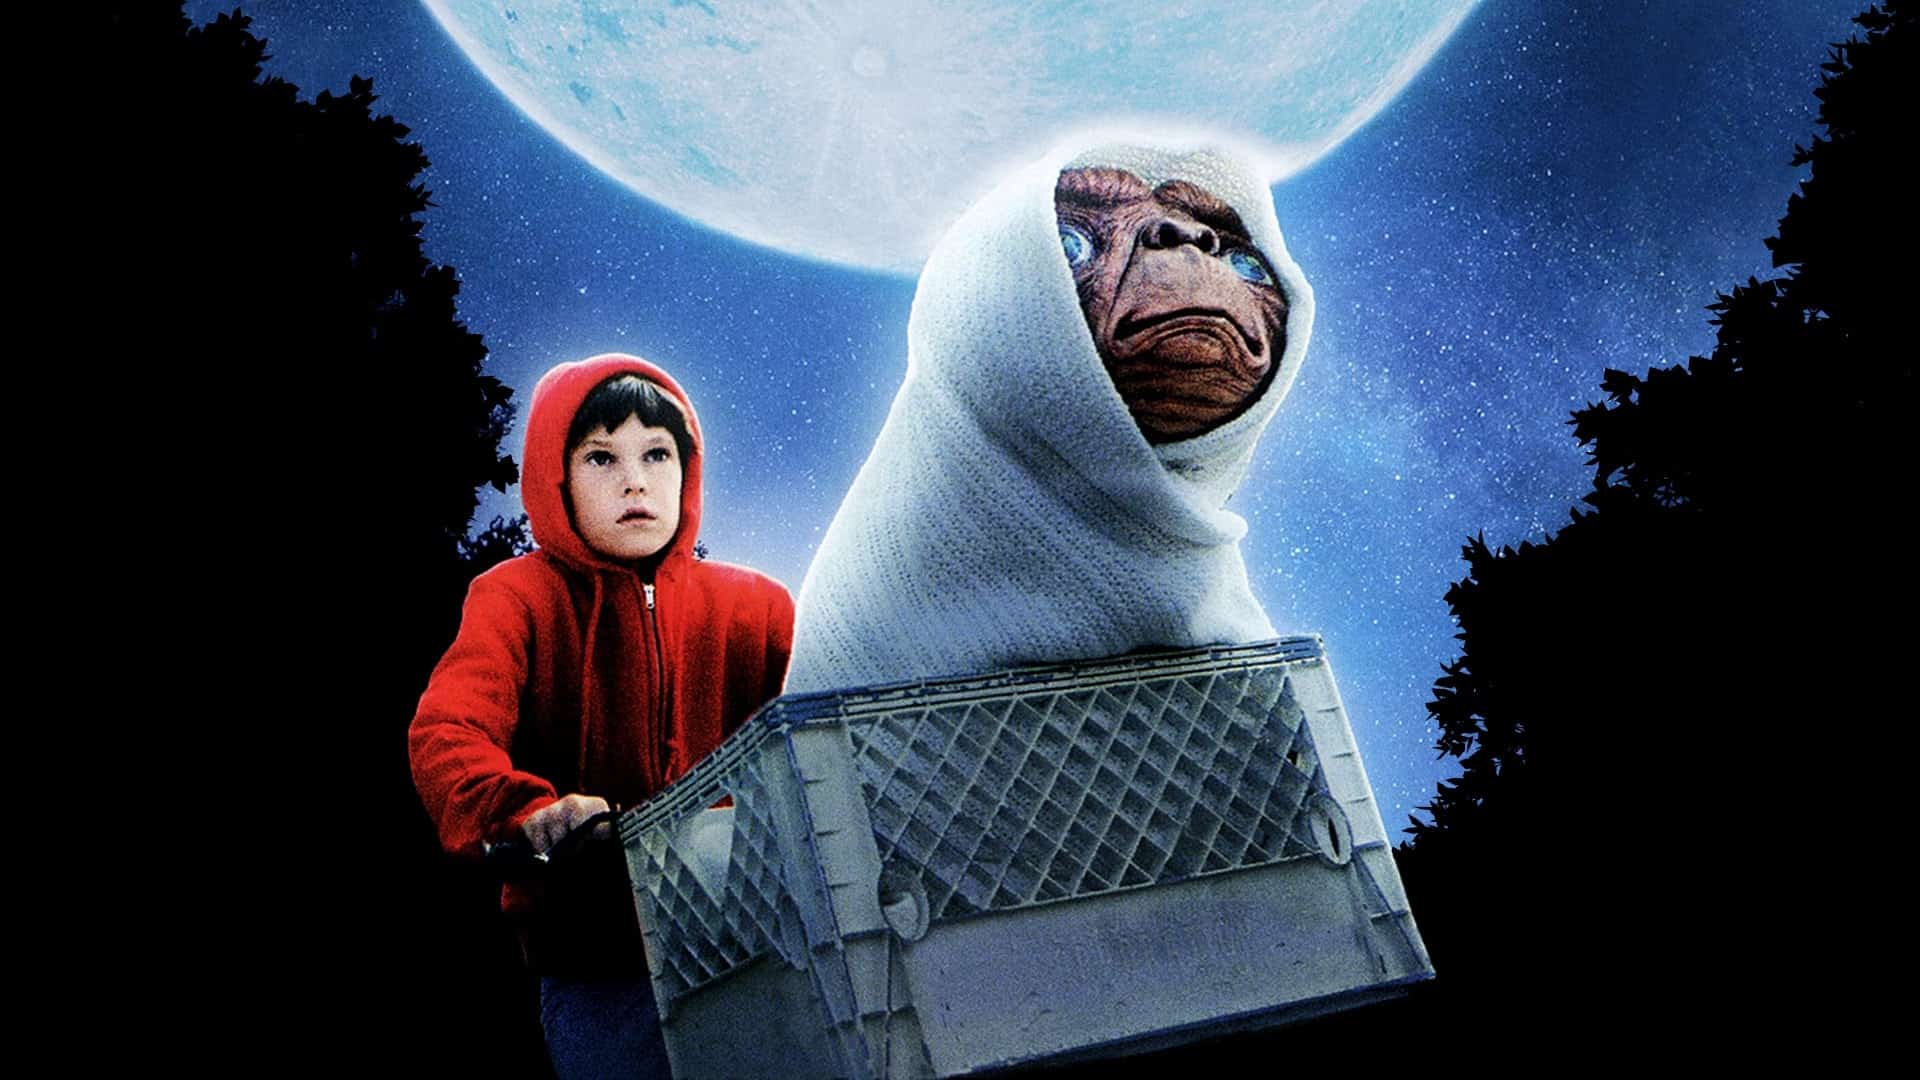 devotudoaocinema.com.br - "E.T. - O Extraterrestre", de Steven Spielberg, na AMAZON PRIME